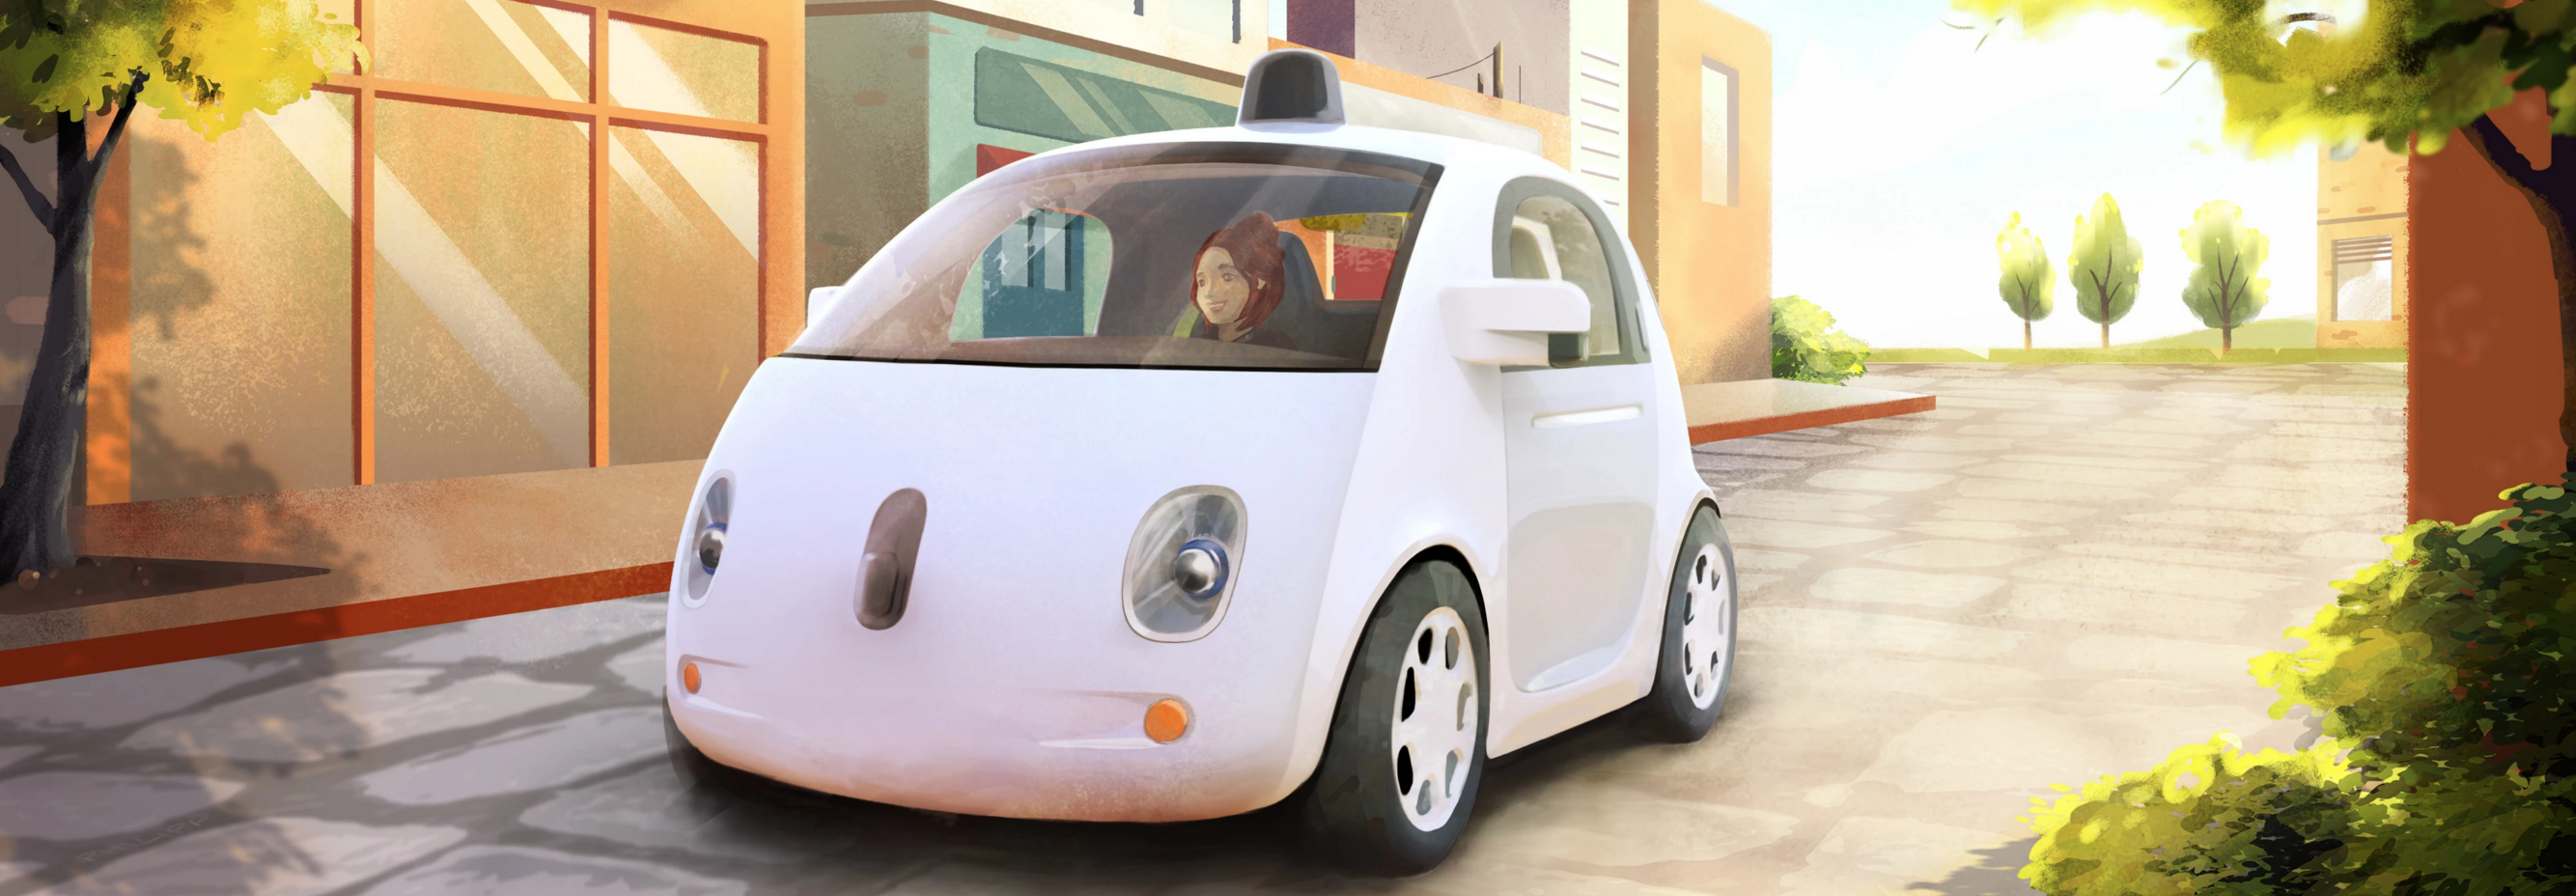 Google_Self_Driving_Car